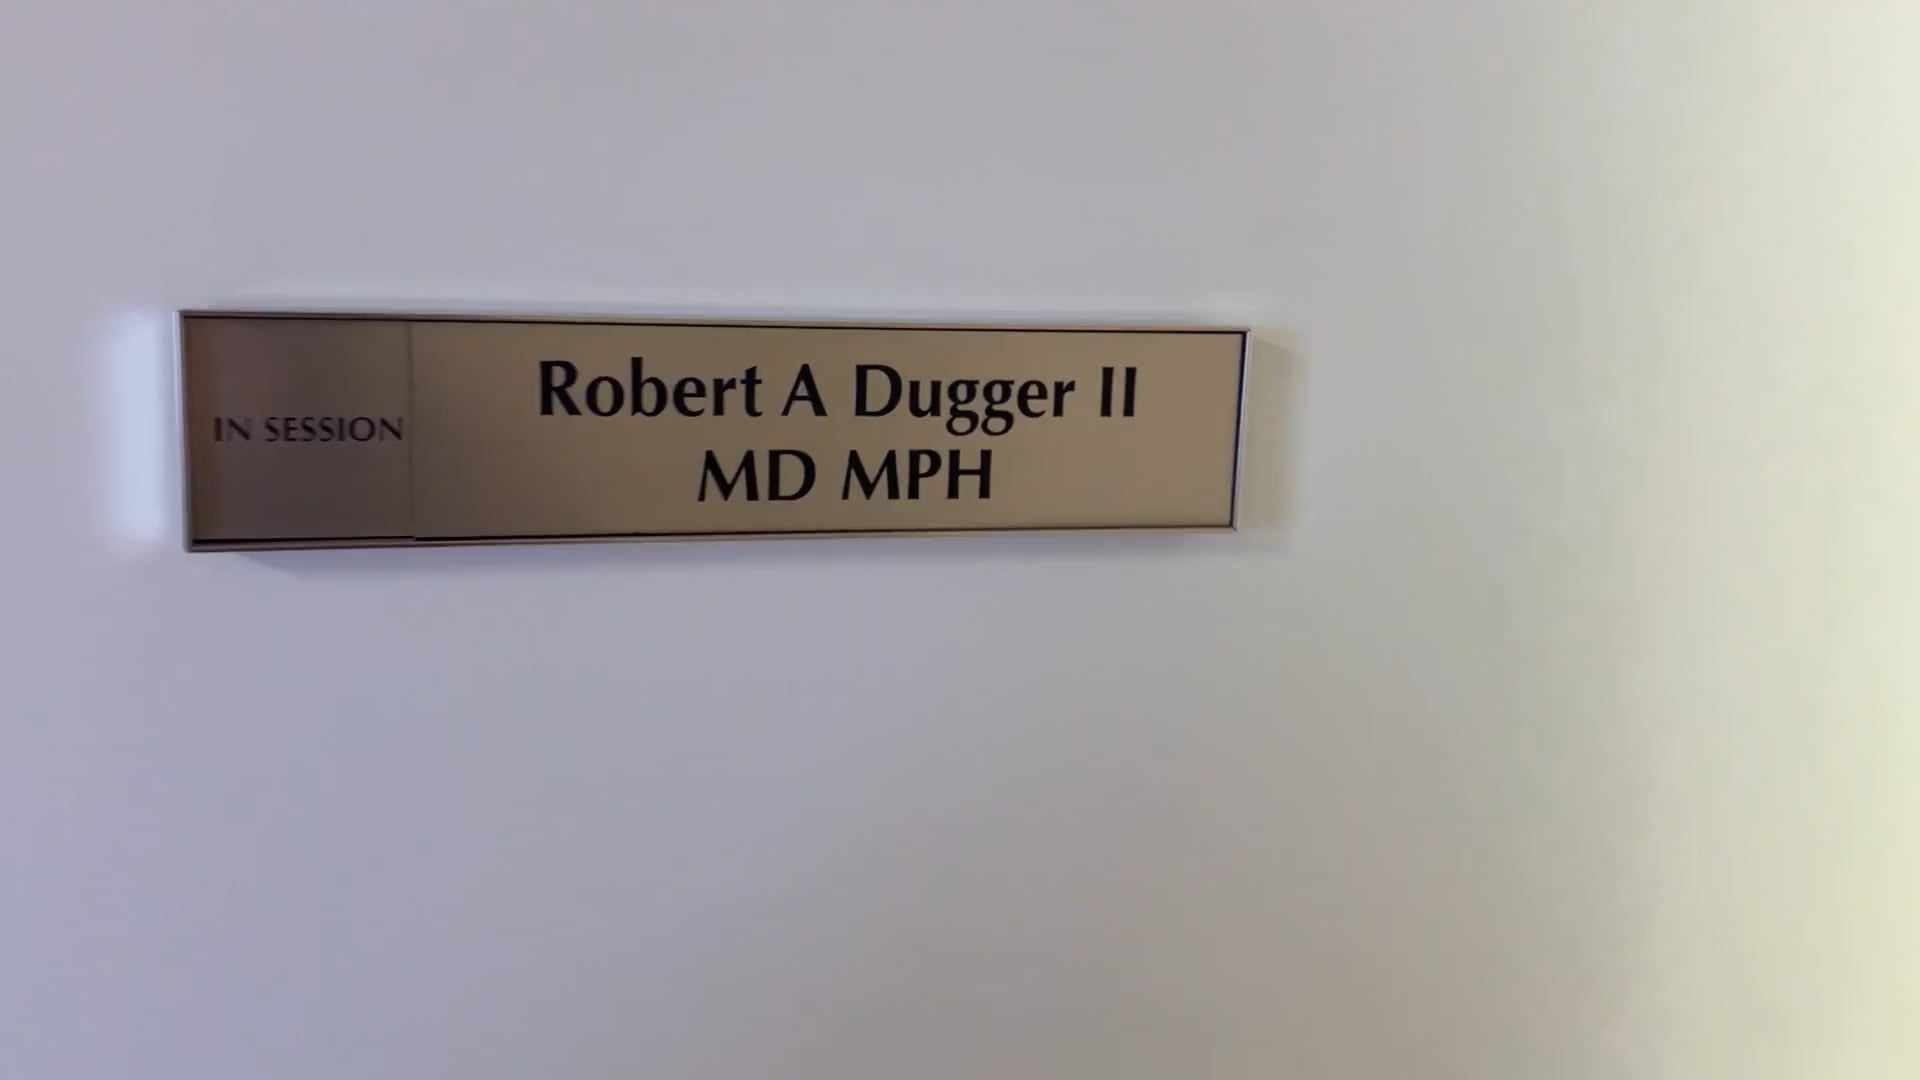 Dr. Robert A Dugger II